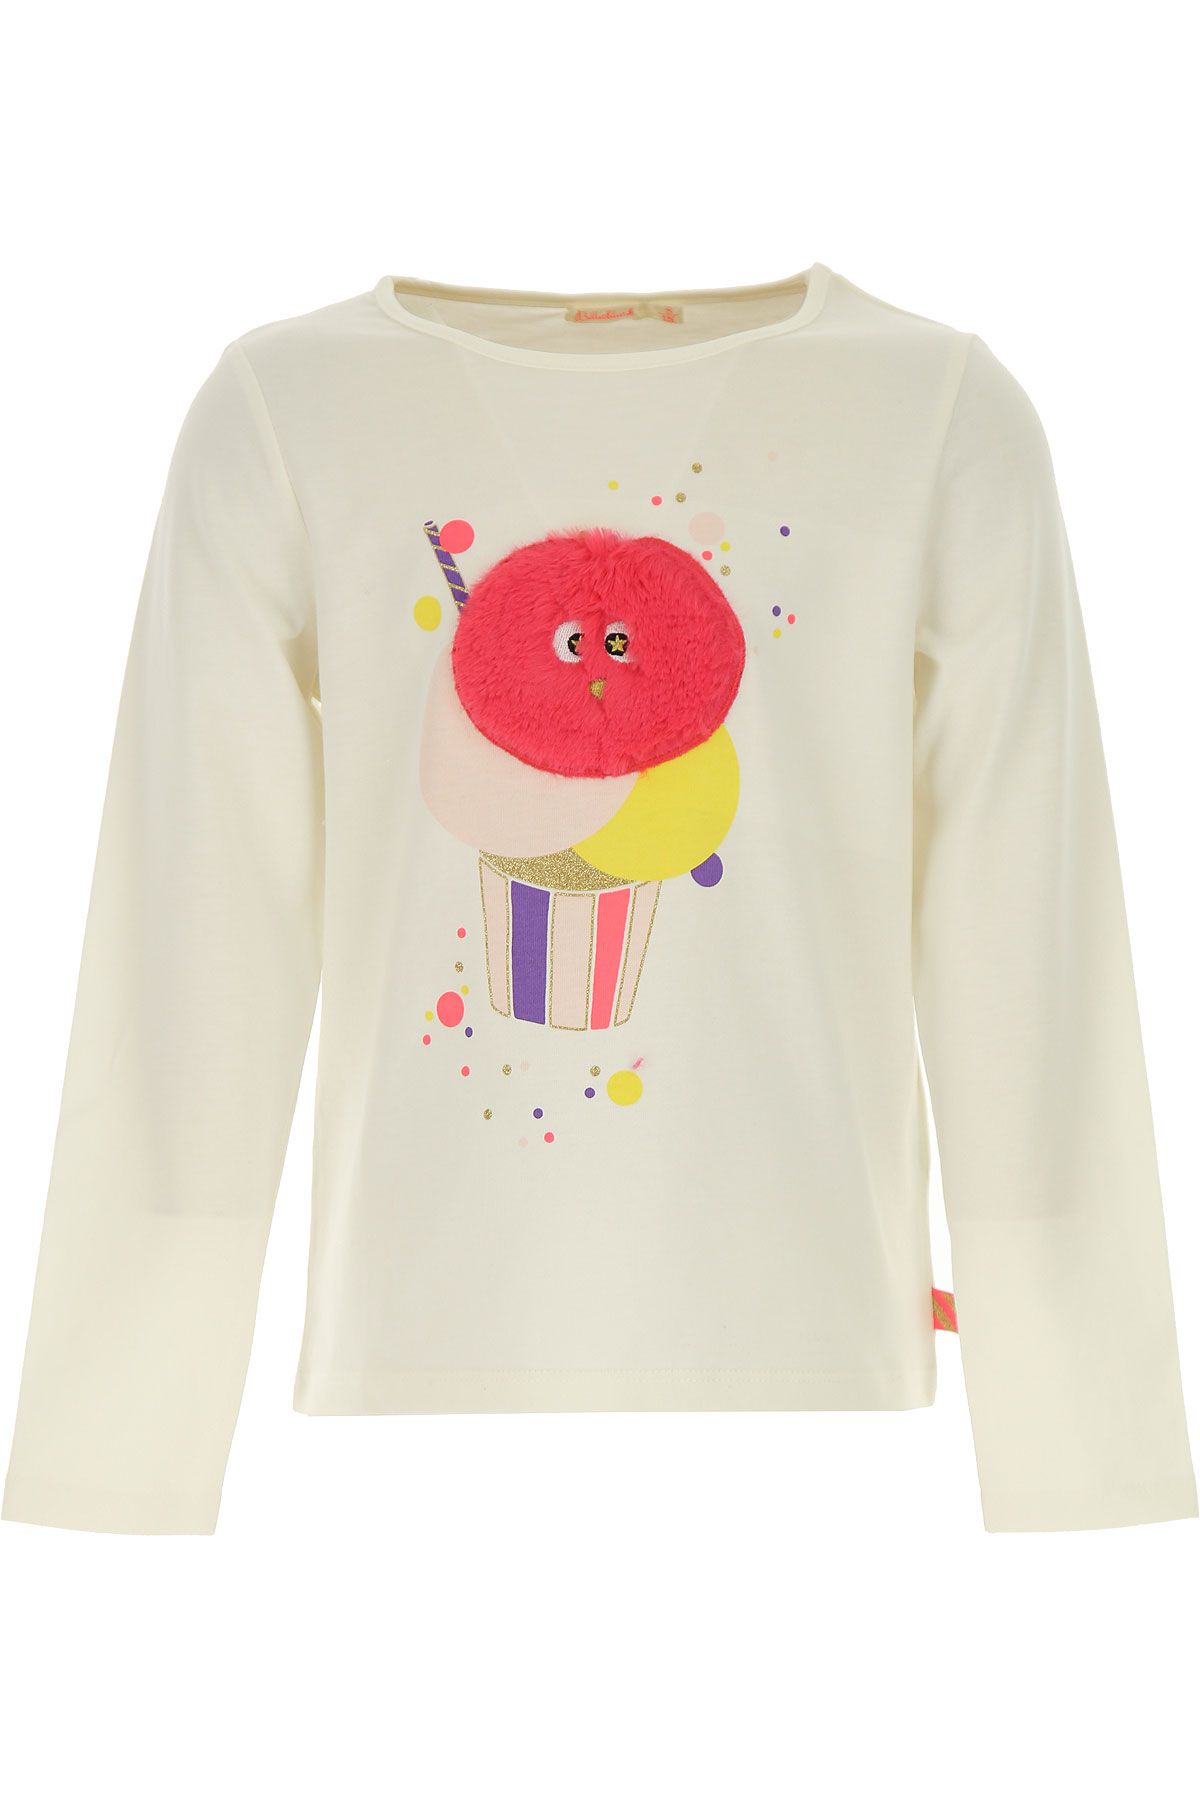 Billieblush Kinder T-Shirt für Mädchen Günstig im Sale, Elfenbein, Baumwolle, 2017, 12Y 8Y